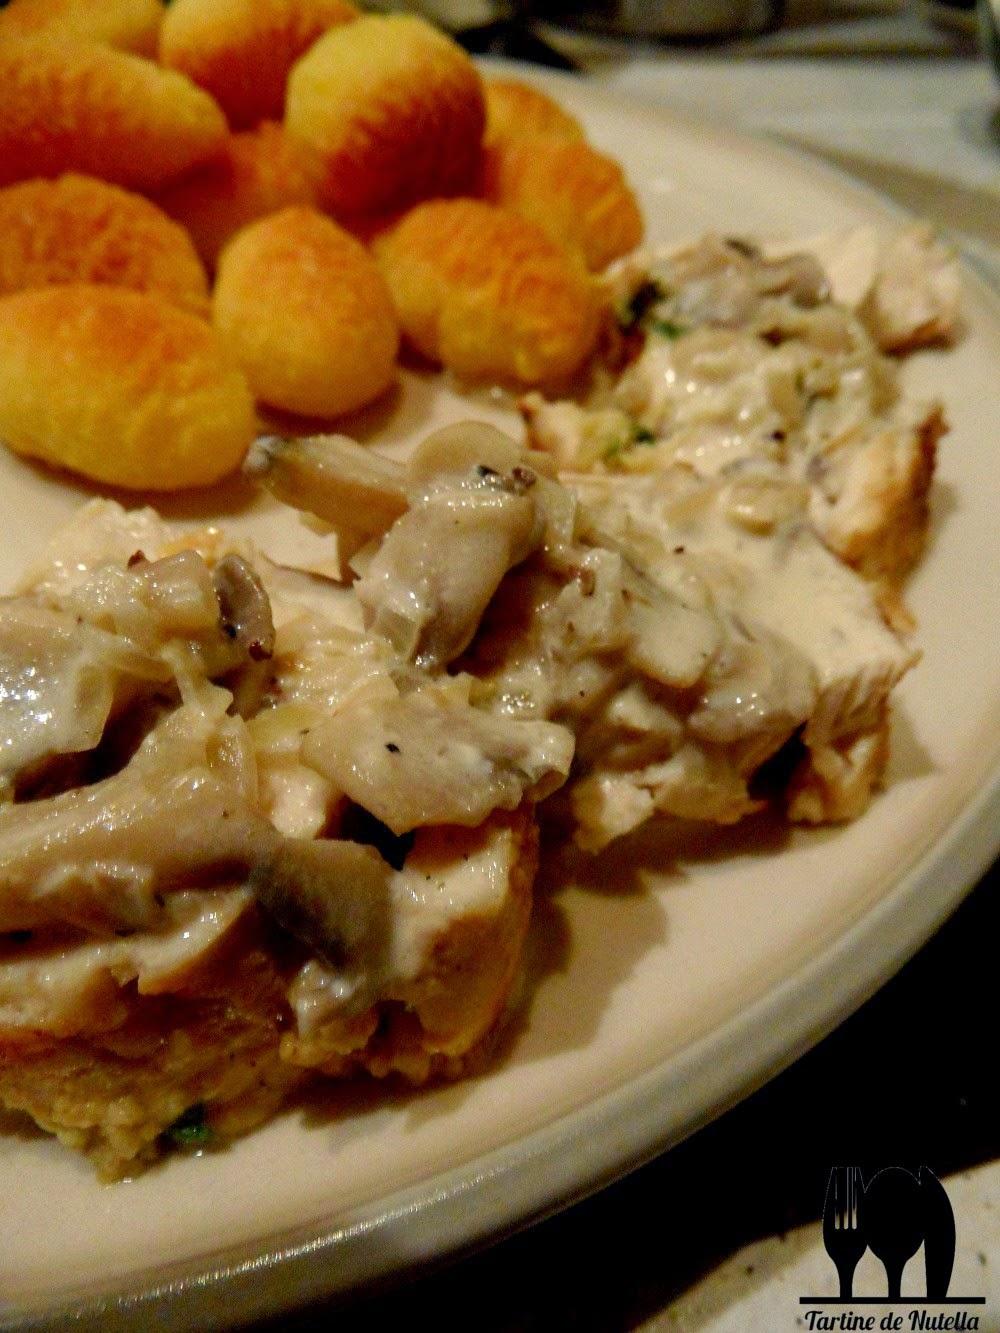 Repas de fête - Médaillons de poulet farcis aux légumes sauce champignons de Paris & Pommes croquettes